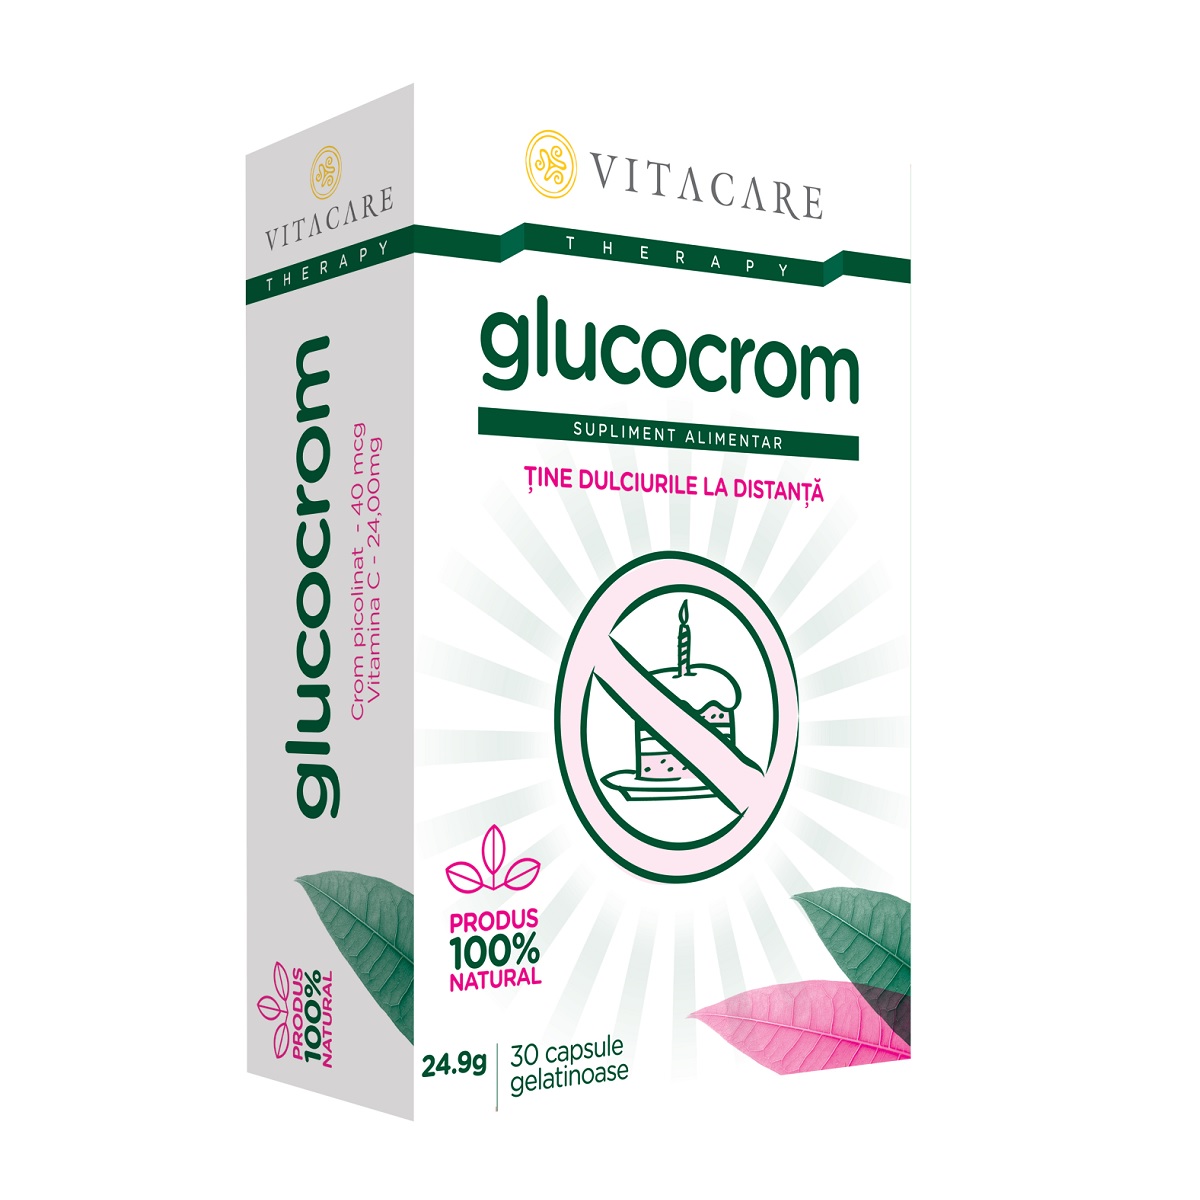 Adulti - Glucocrom, 30 capsule, Vitacare, sinapis.ro